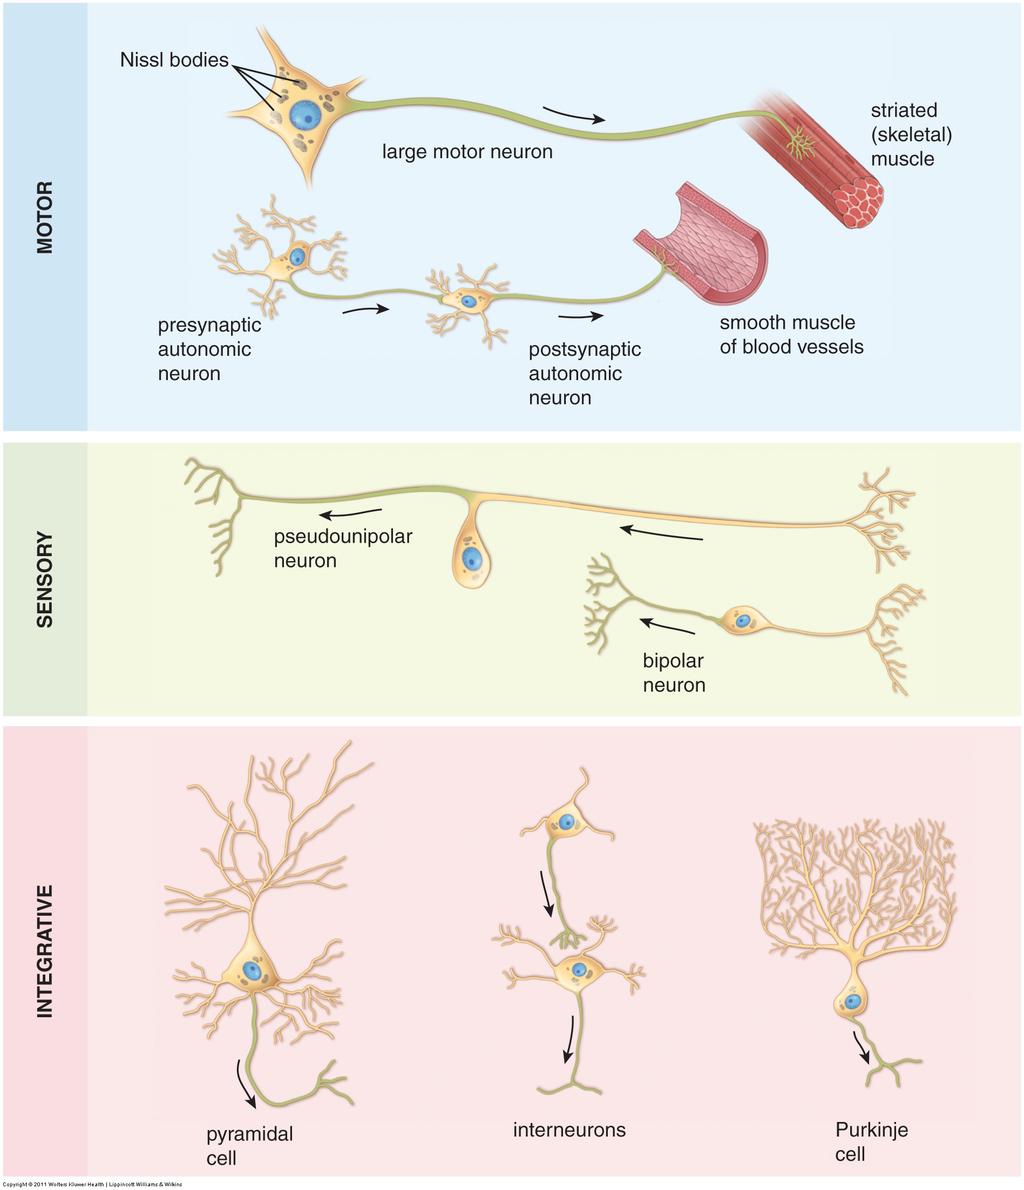 Klassifikasjon av nerveceller motoneuron presynaptisk / postsynaptisk autonomt neuron pseudounipolar nervecelle bipolar nervecelle